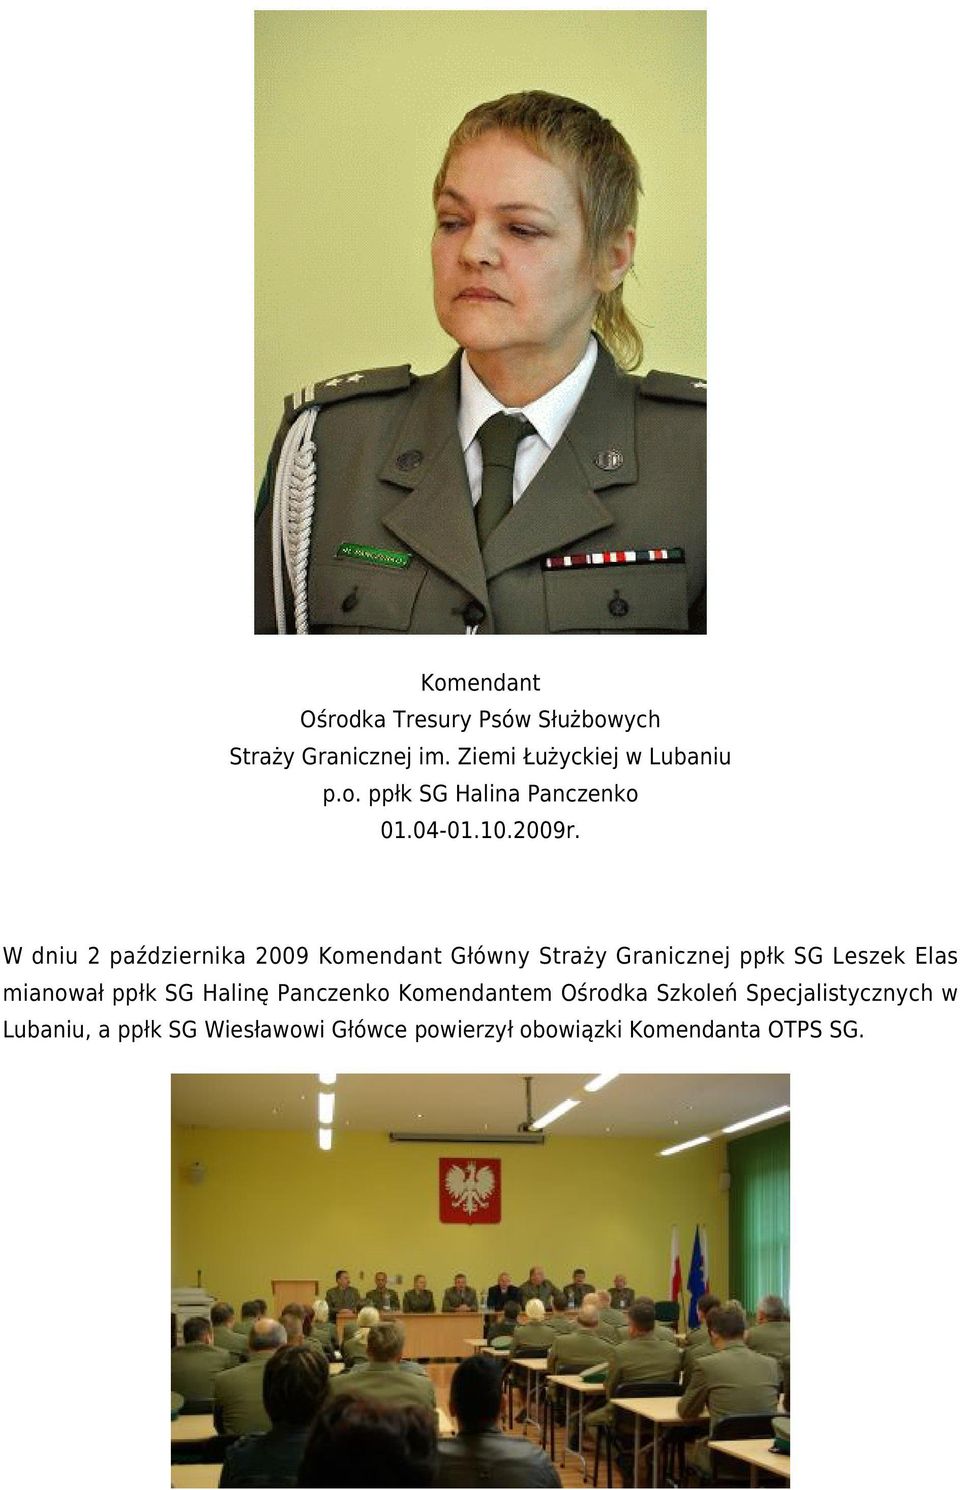 W dniu 2 października 2009 Komendant Główny Straży Granicznej ppłk SG Leszek Elas mianował